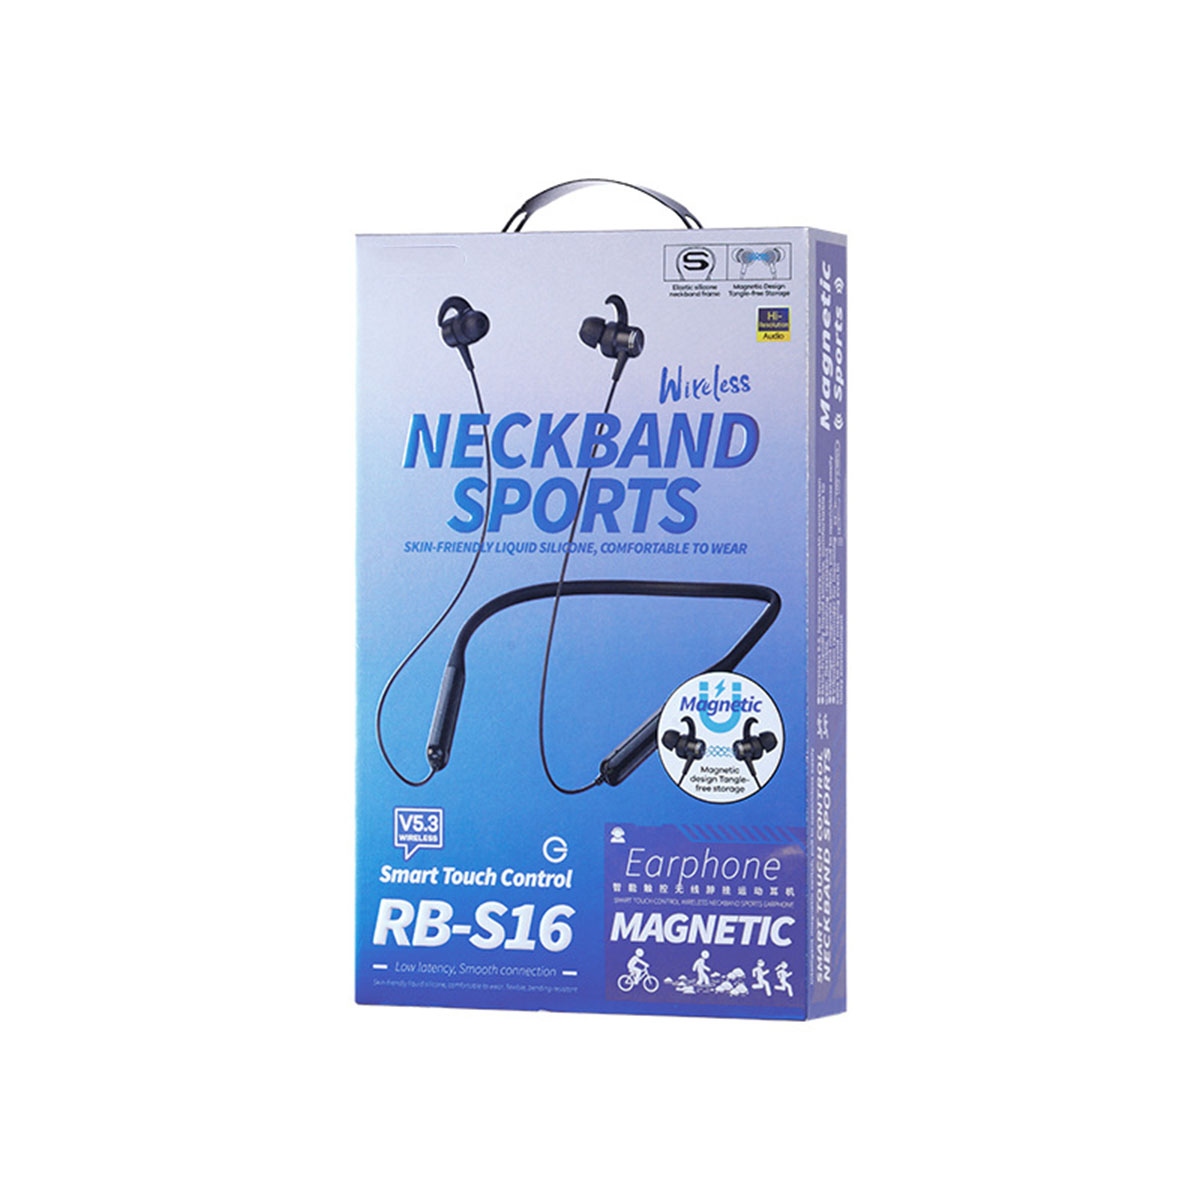 BRIGHTAKE StereoPro: Lange Akkulaufzeit, Neckband Schnellverb, Wasserdicht, Weiß Bluetooth-Kopfhörer